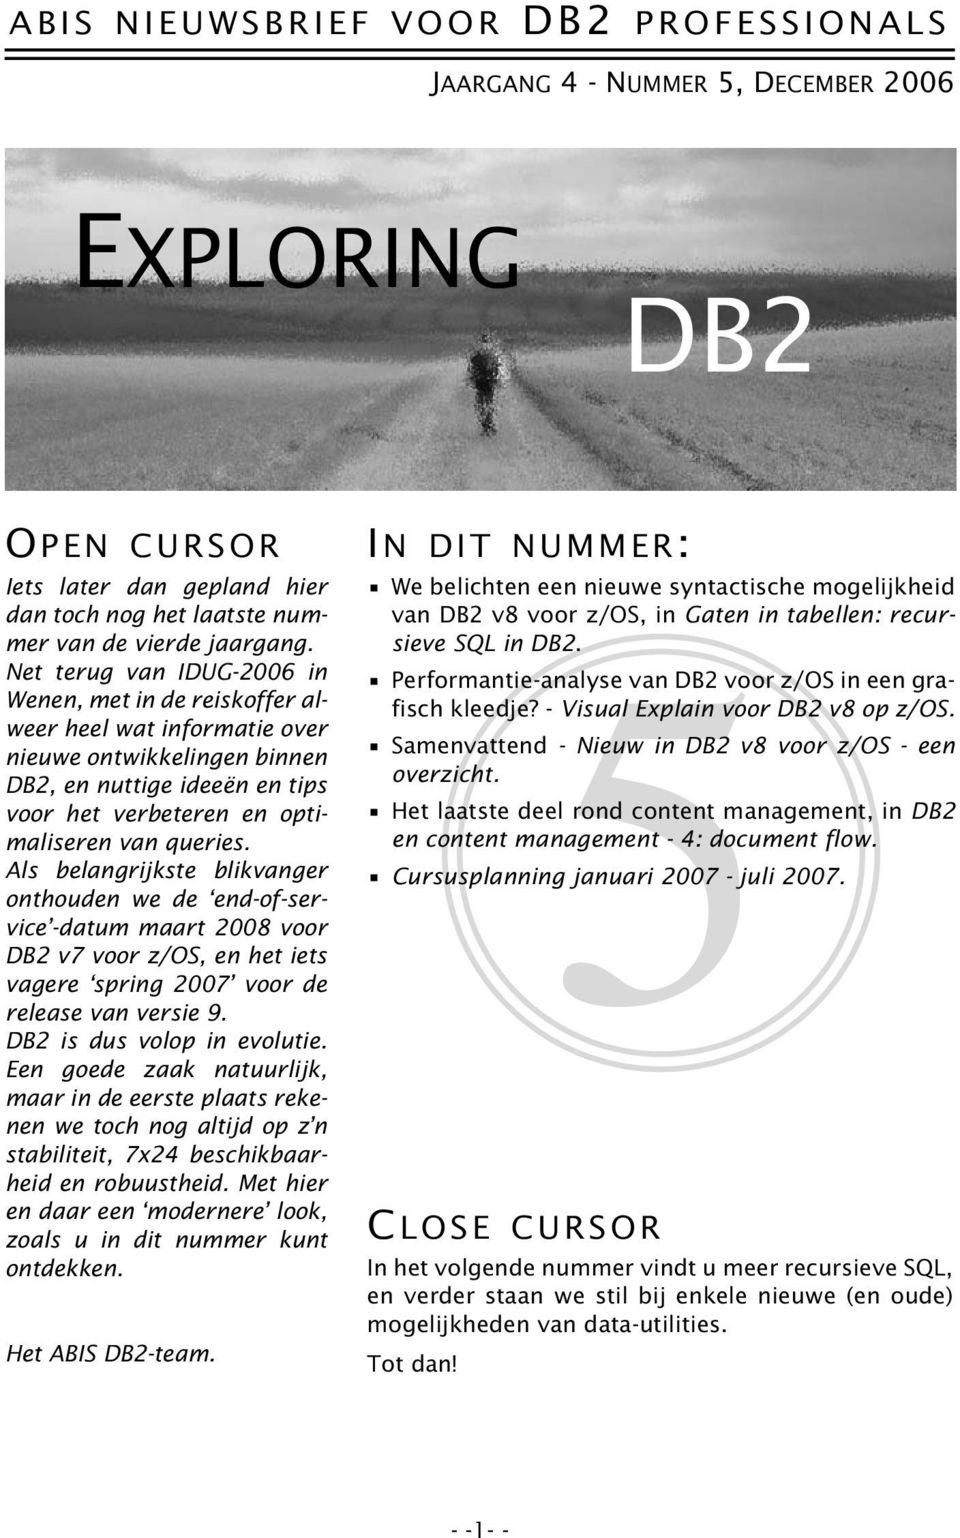 Als belangrijkste blikvanger onthouden we de end-of-service -datum maart 2008 voor DB2 v7 voor z/os, en het iets vagere spring 2007 voor de release van versie 9. DB2 is dus volop in evolutie.